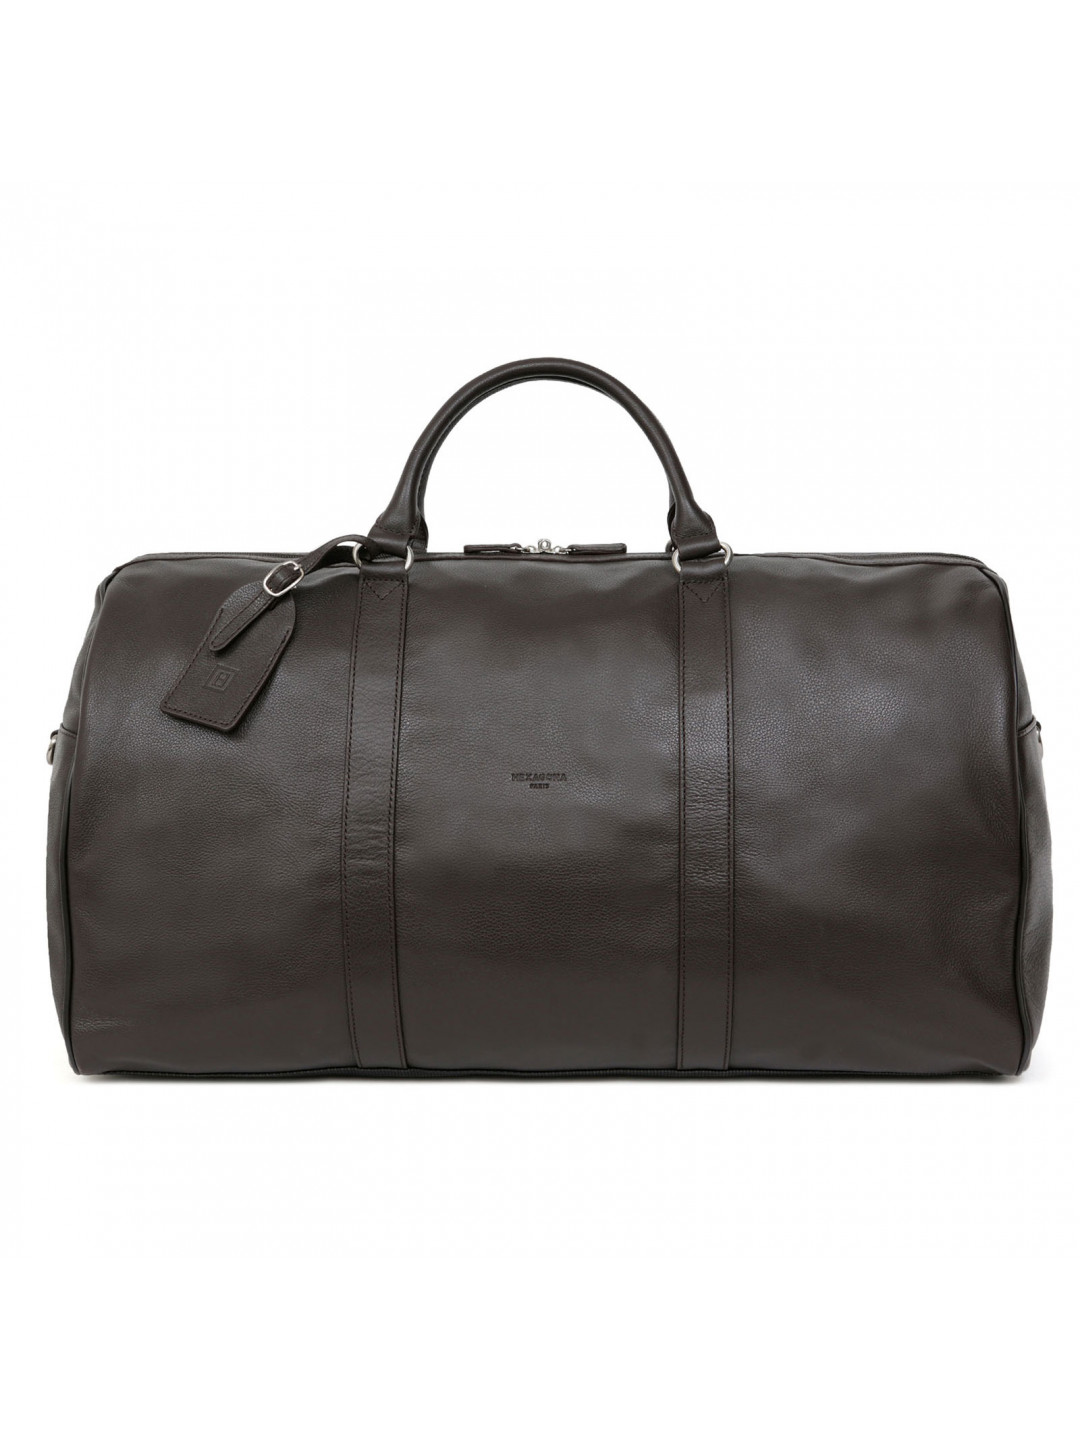 Luxusní kožená cestovní taška tmavě hnědá – Hexagona Maestro